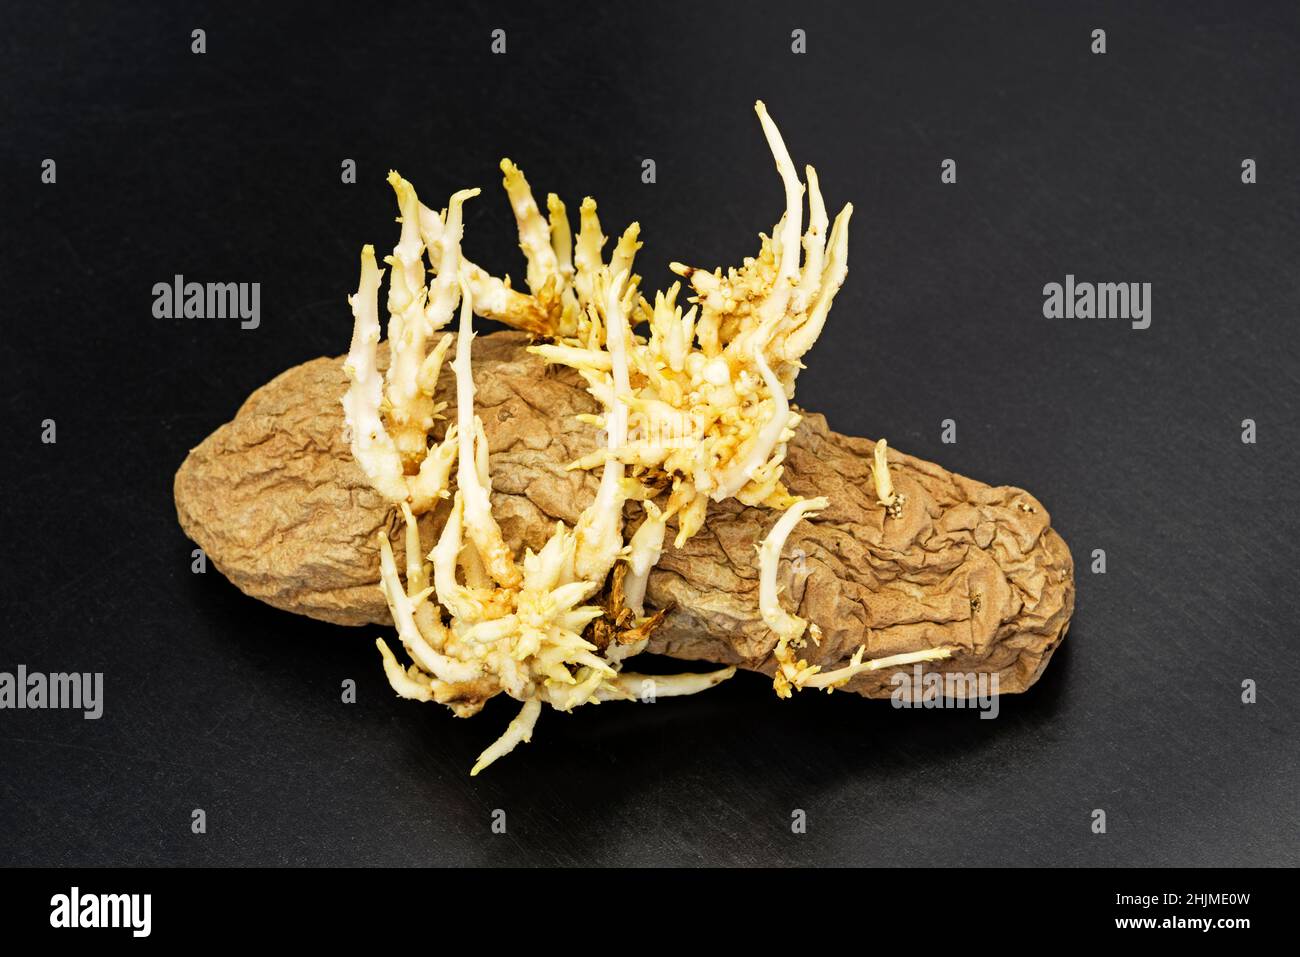 Faltige alte, keimende Kartoffel auf einem schwarzen Tisch Stockfoto